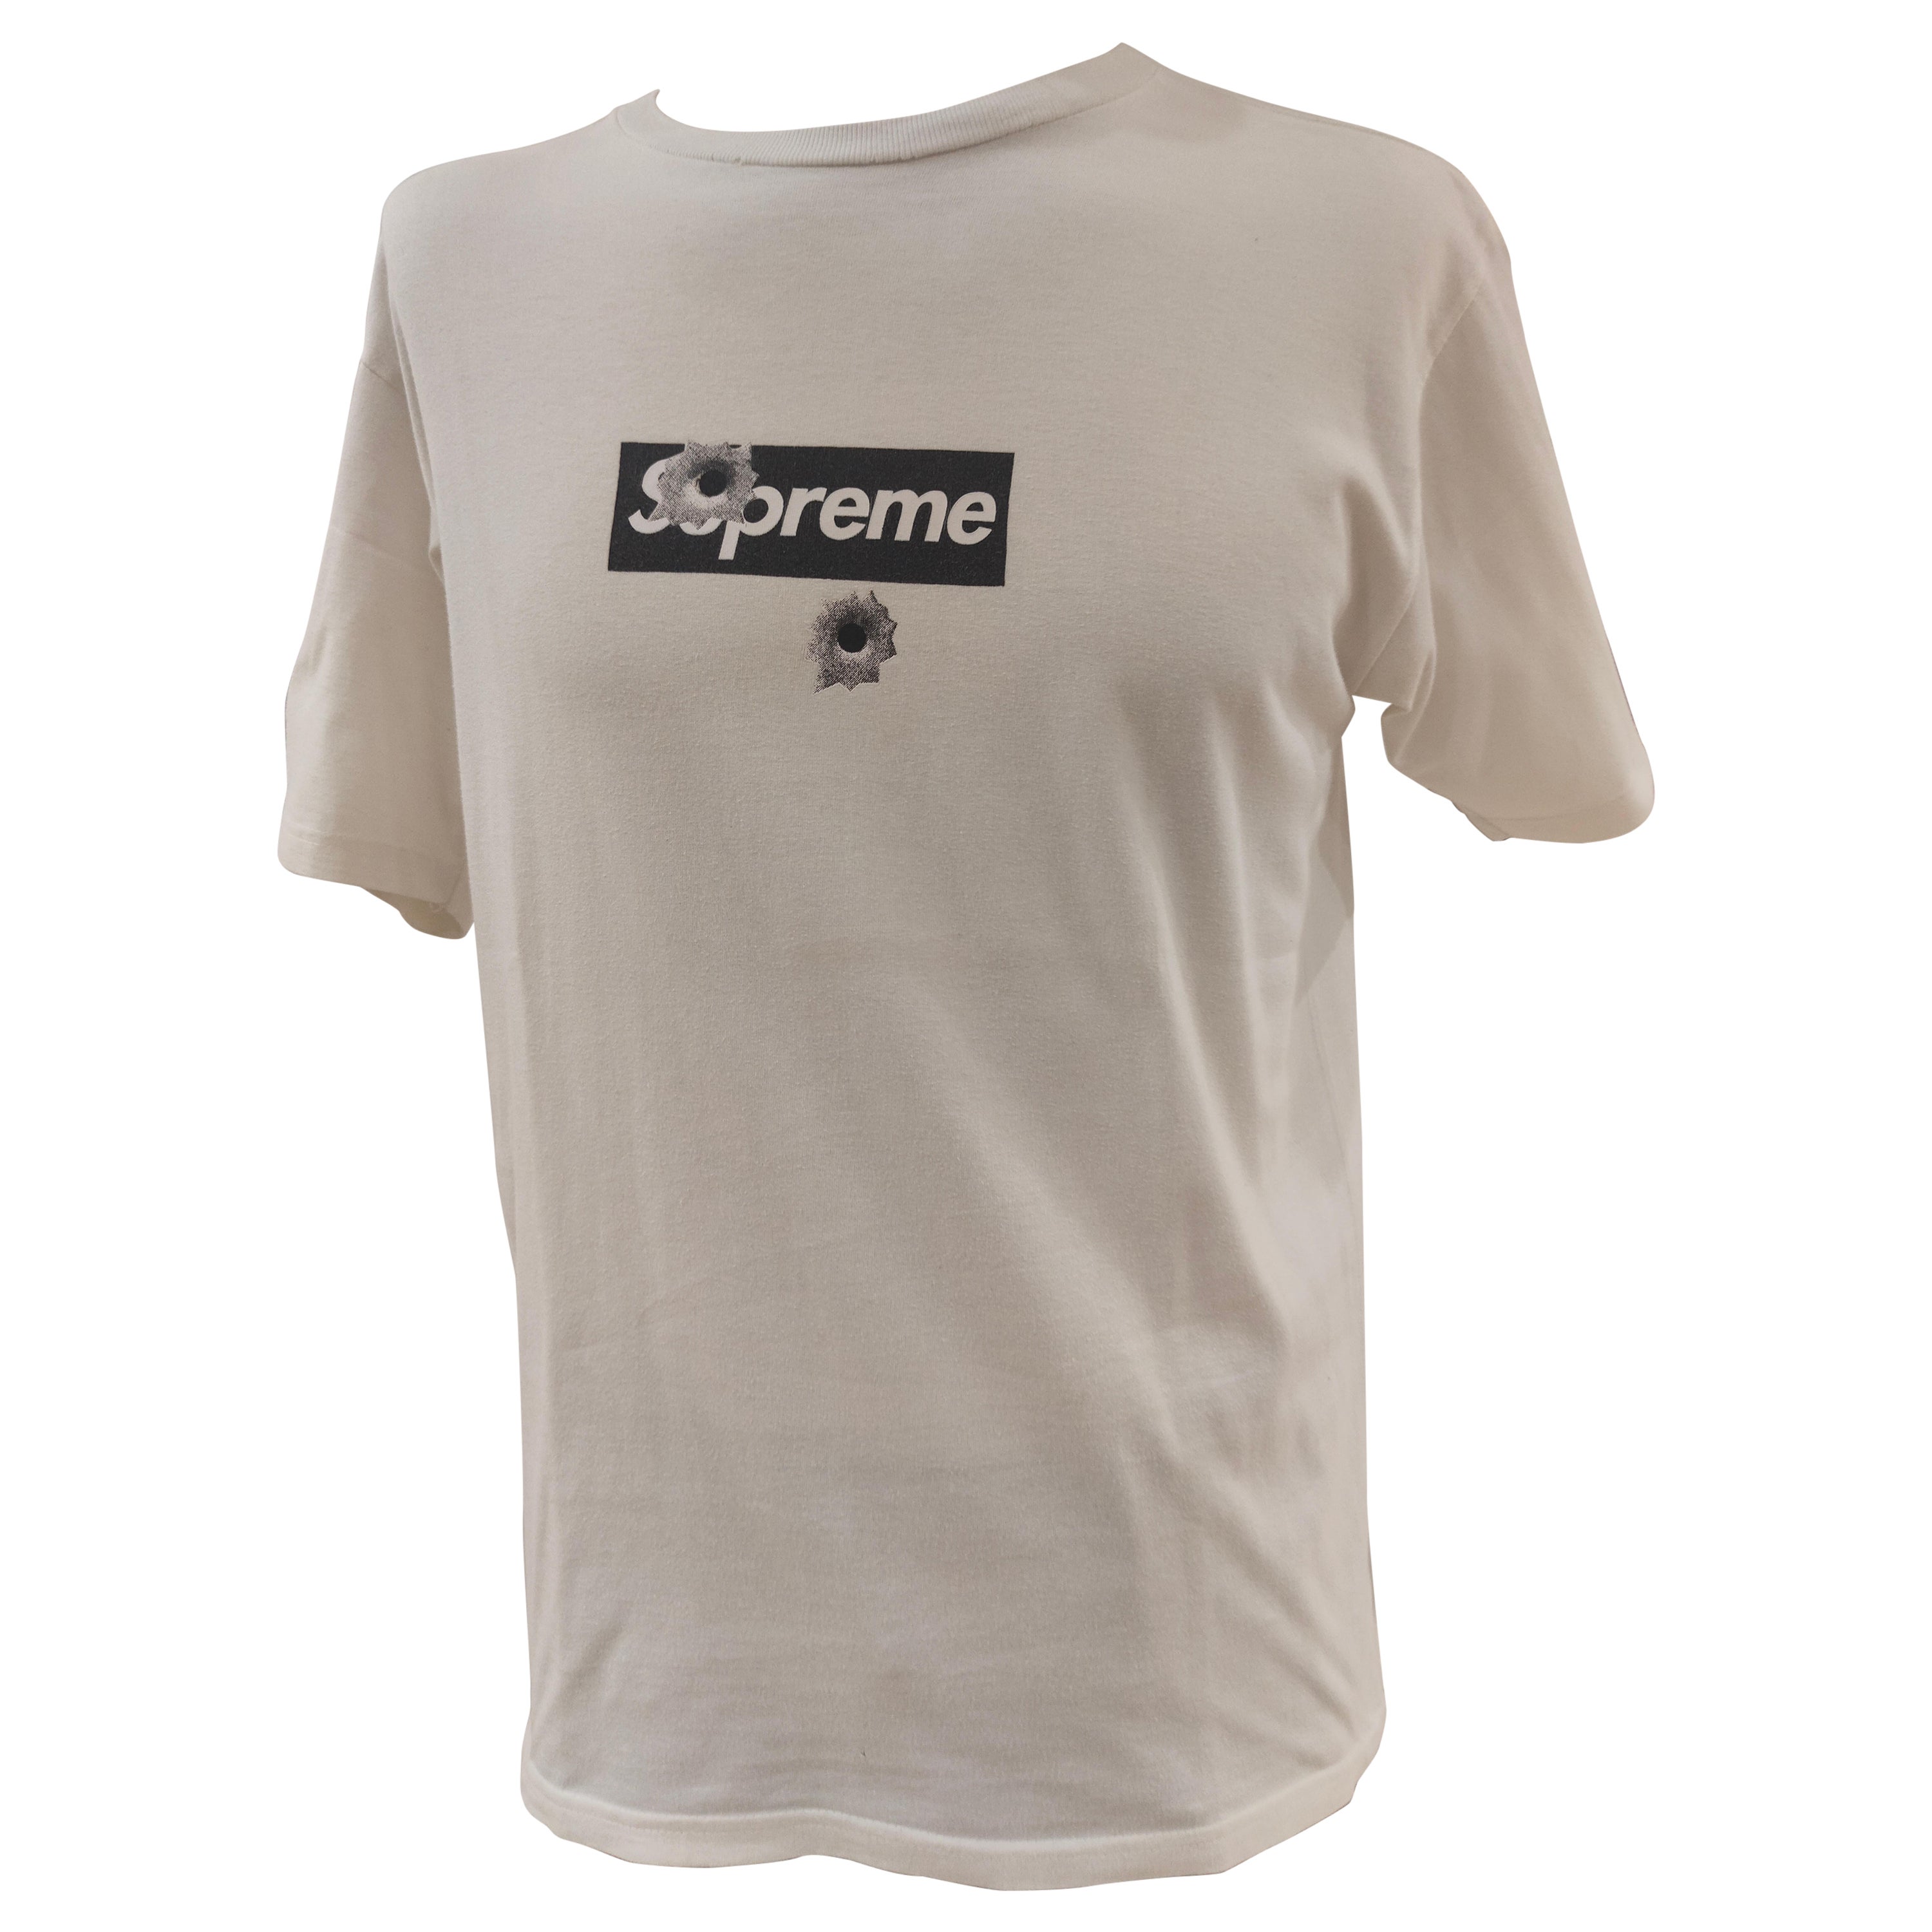 Camiseta Supreme White edición limitada